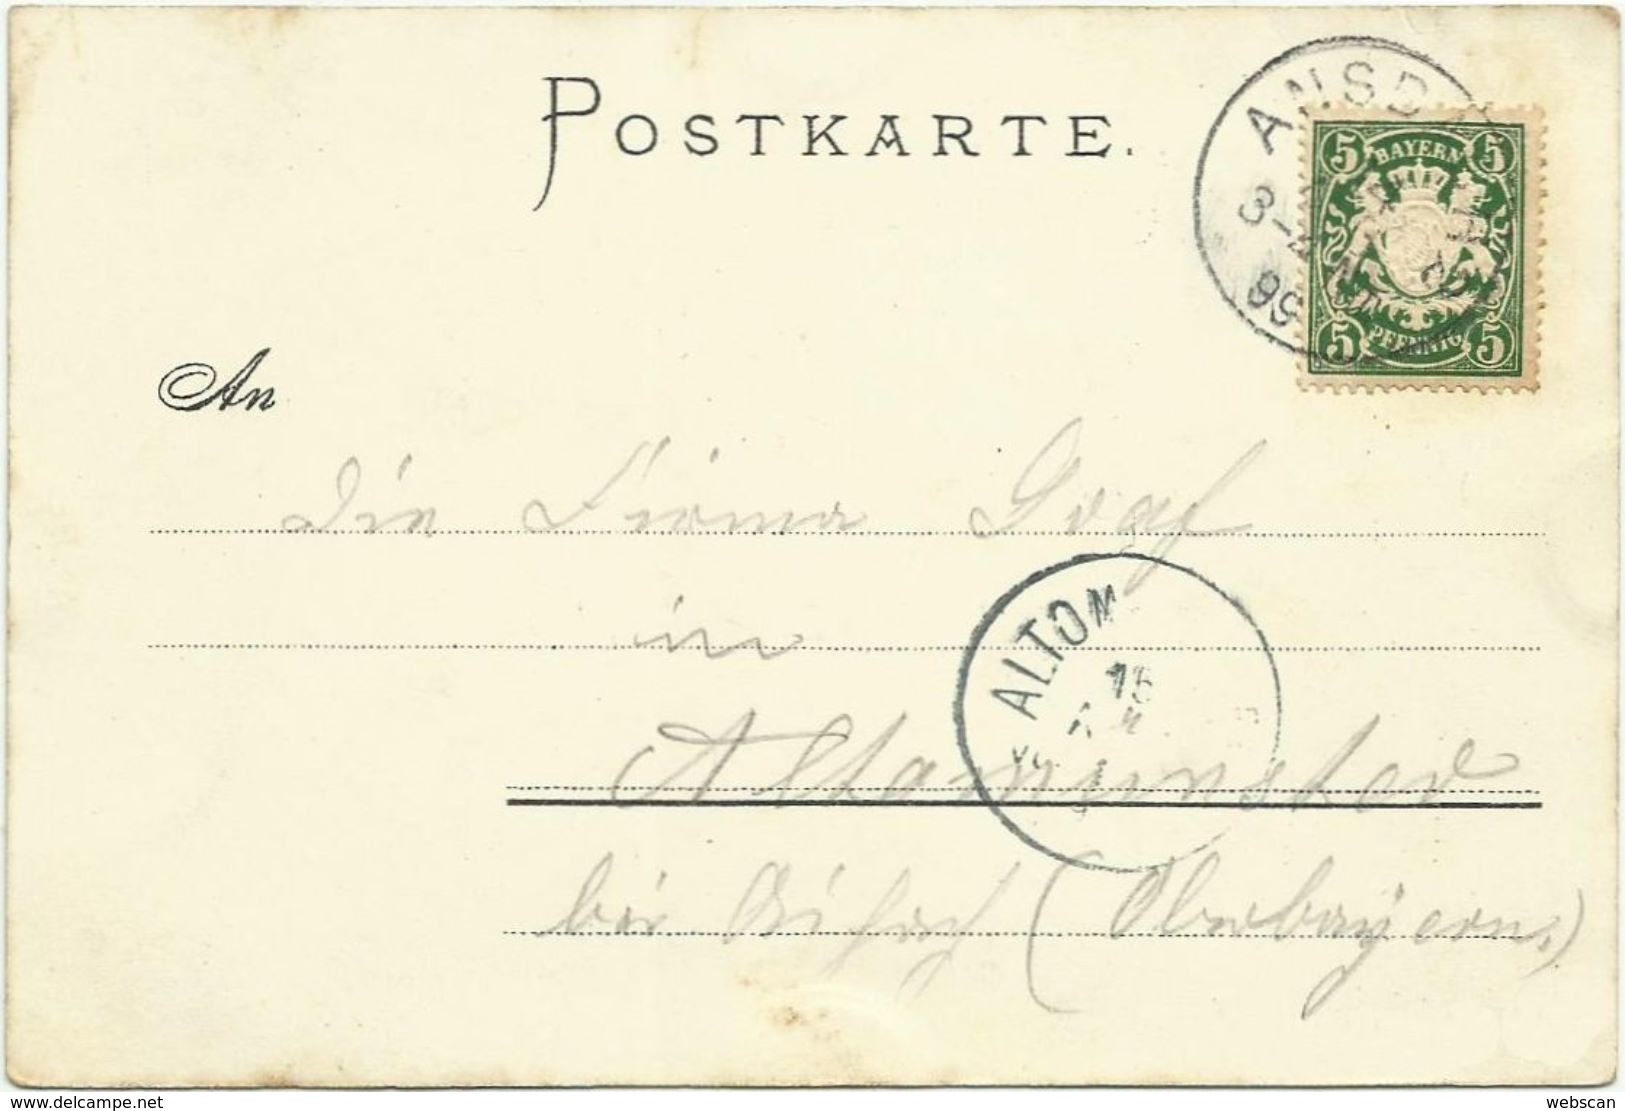 AK Ansbach Hofgarten & Prinzenschlösschen Farblitho Zinn 1899 #13 - Ansbach